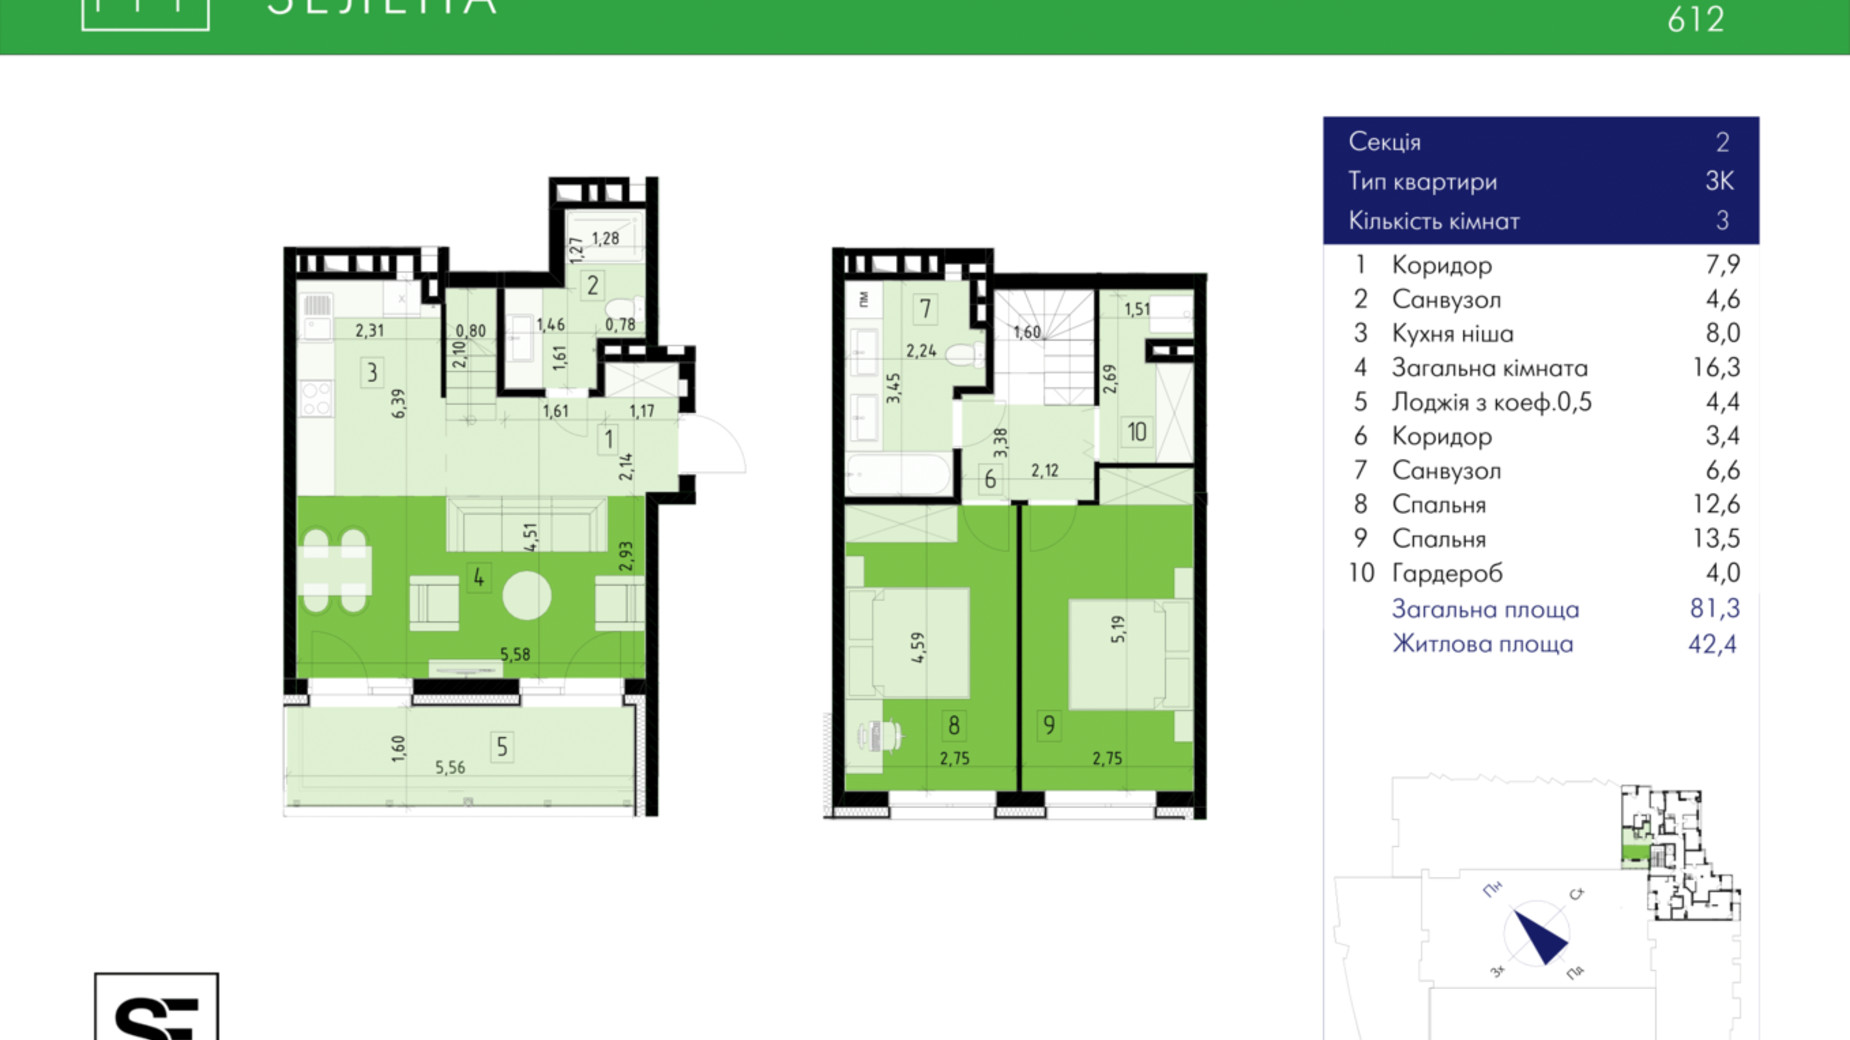 Планировка много­уровневой квартиры в ЖК 111 Зеленая 81.3 м², фото 634021